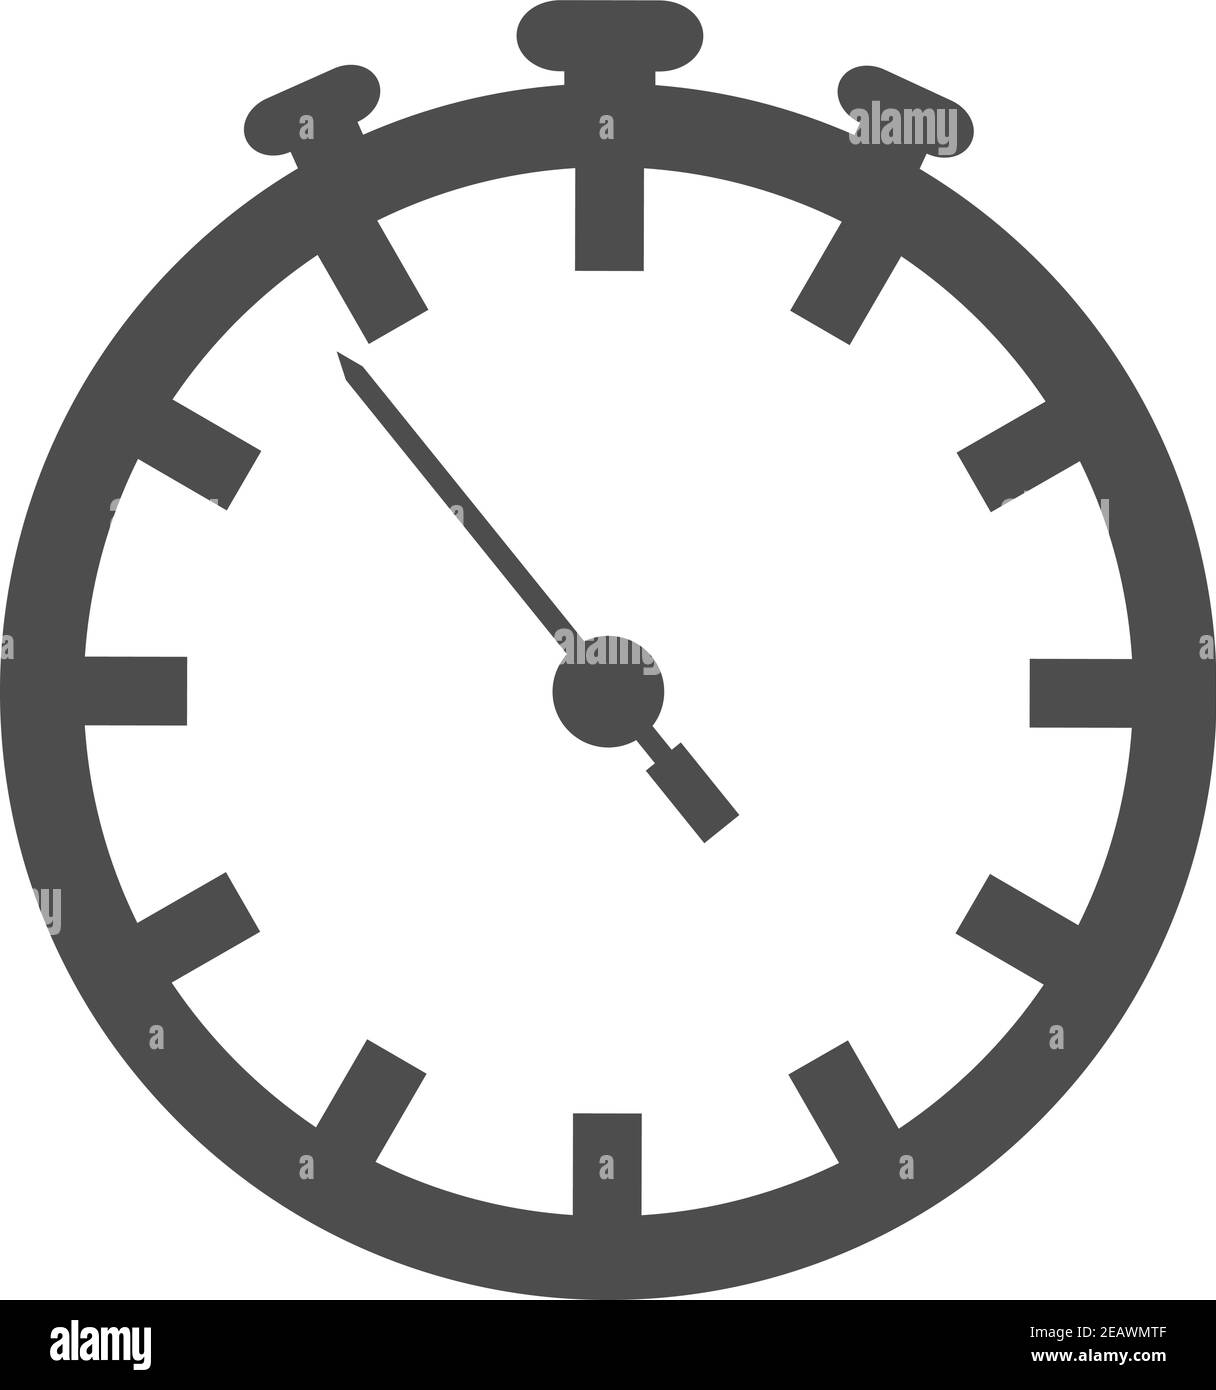 illustration vectorielle simple de l'icône d'un minuteur plat ou d'un réveil Illustration de Vecteur